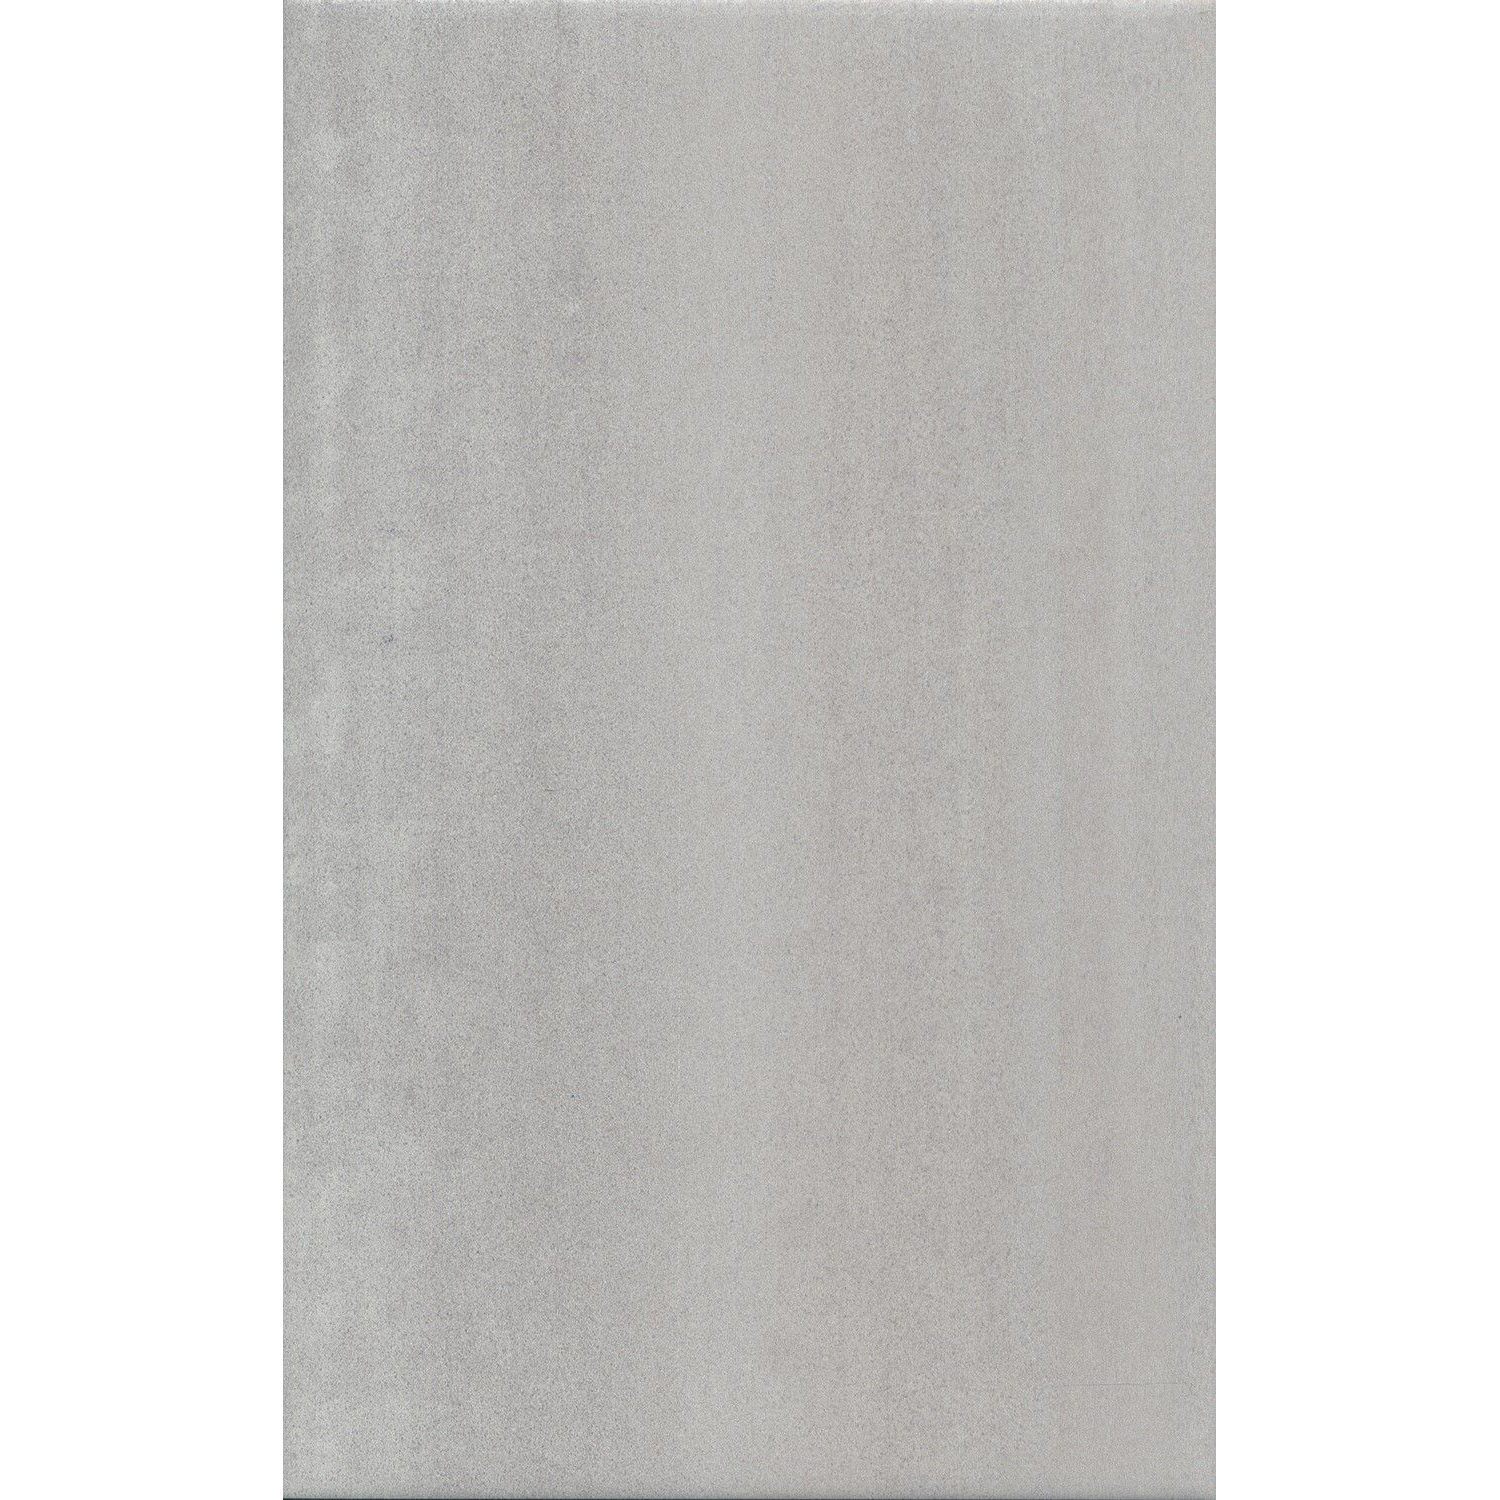 Плитка Kerama Marazzi Ломбардиа серый 6398 25x40 см